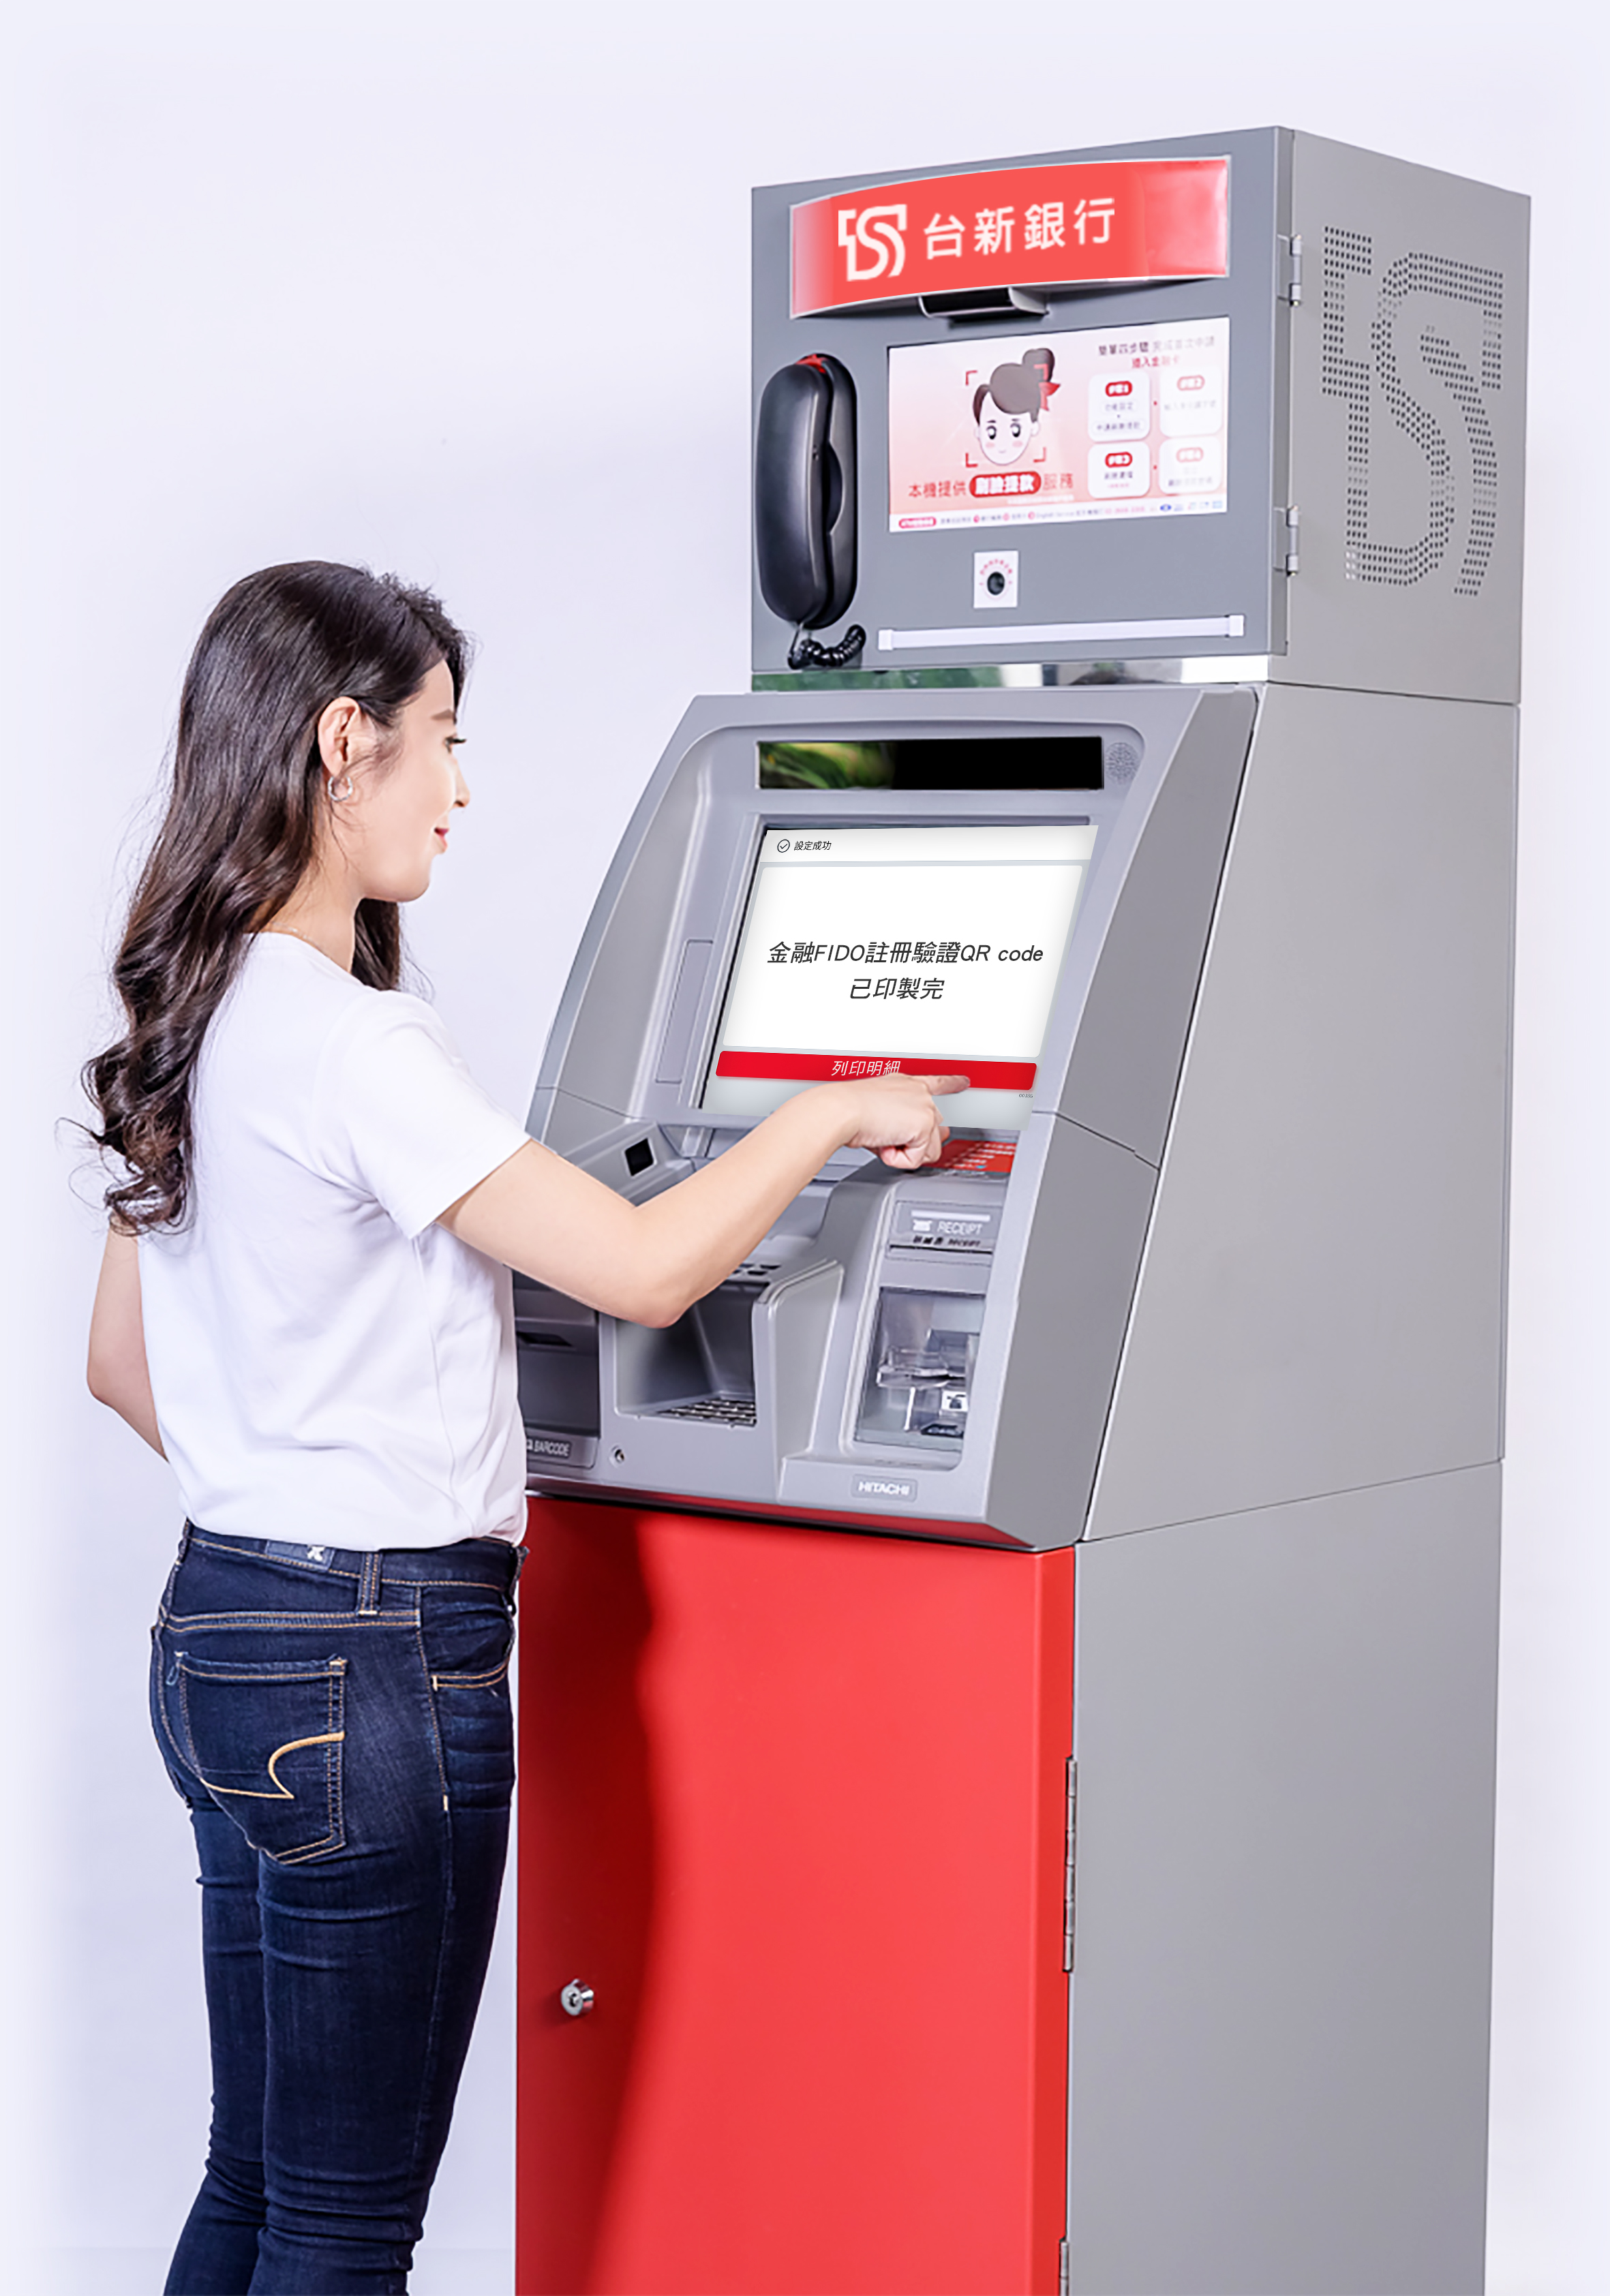 20221028_台新銀響應身分驗證線上化 首波提供金融FIDO ATM註冊服務_新聞照片